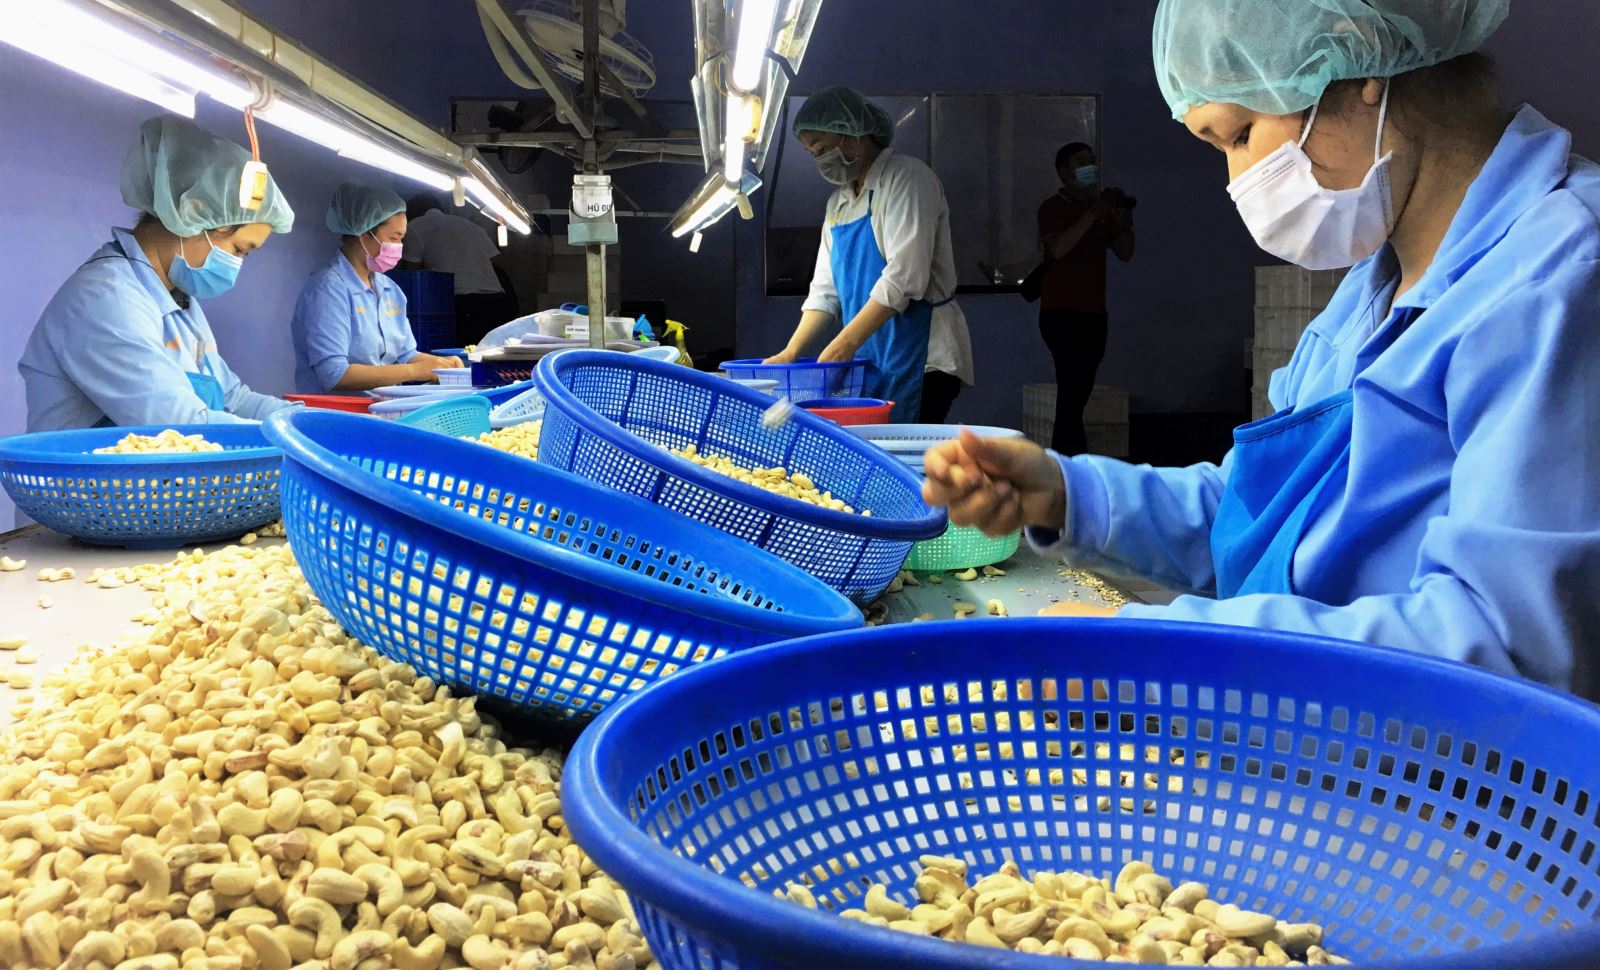 Campuchia, nhà cung cấp top đầu một loại hạt cho Việt Nam đang gặp khó, nguồn cung cho Việt Nam có bị ảnh hưởng?- Ảnh 1.